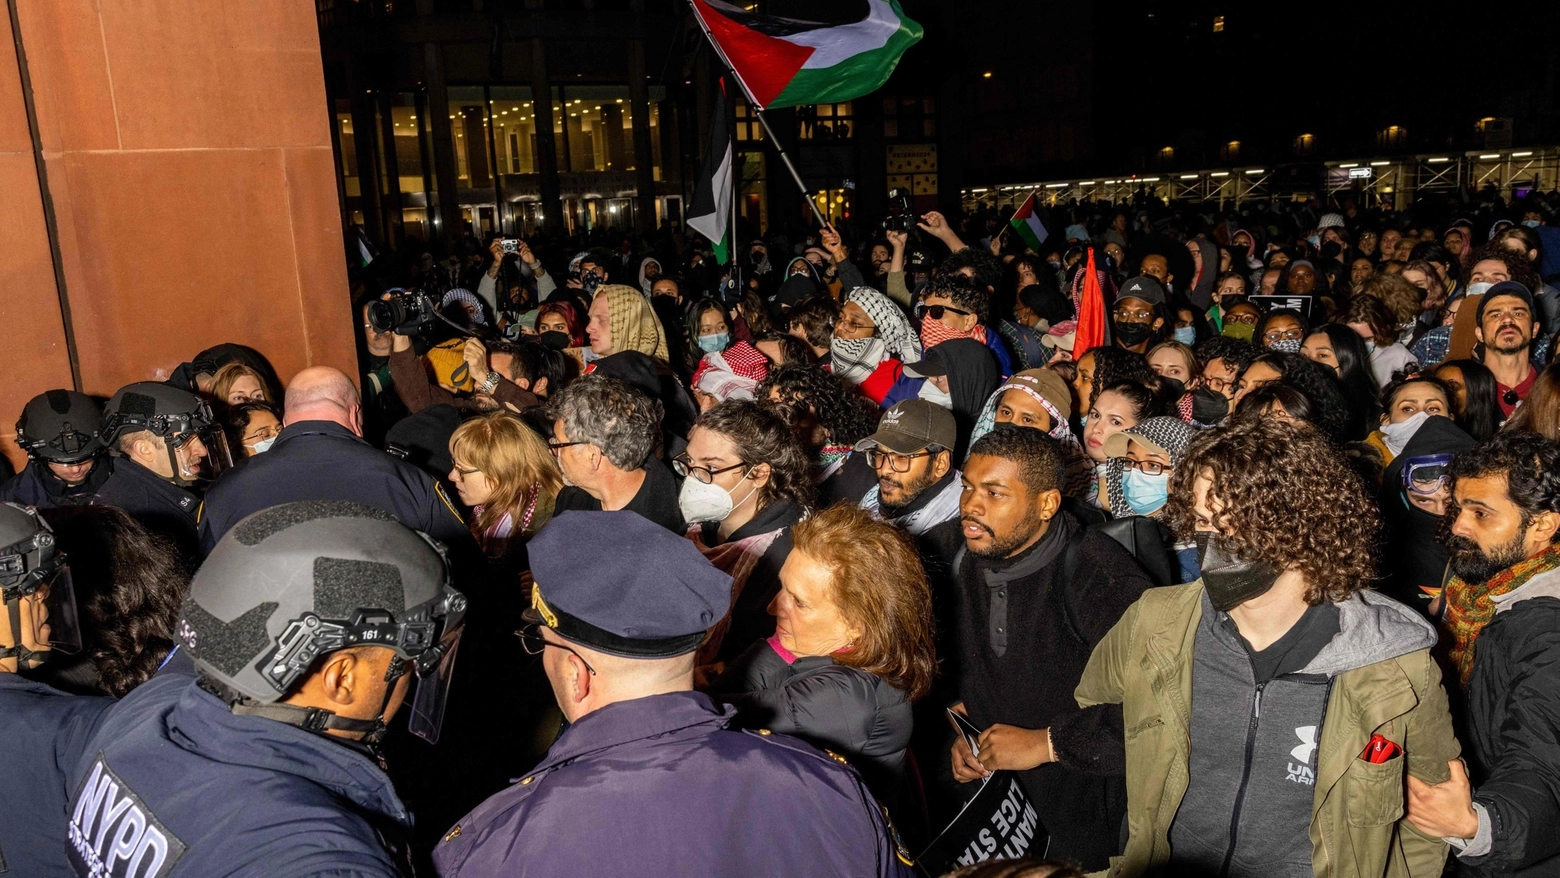 Oltre 150 arresti alla NYU: i video. Manifestazioni studentesche da Yale a Berkeley, caos e scontri. Alla Columbia, epicentro delle tensioni, le lezioni in presenza sono state sospese. Tanti i professori schierati con i ragazzi